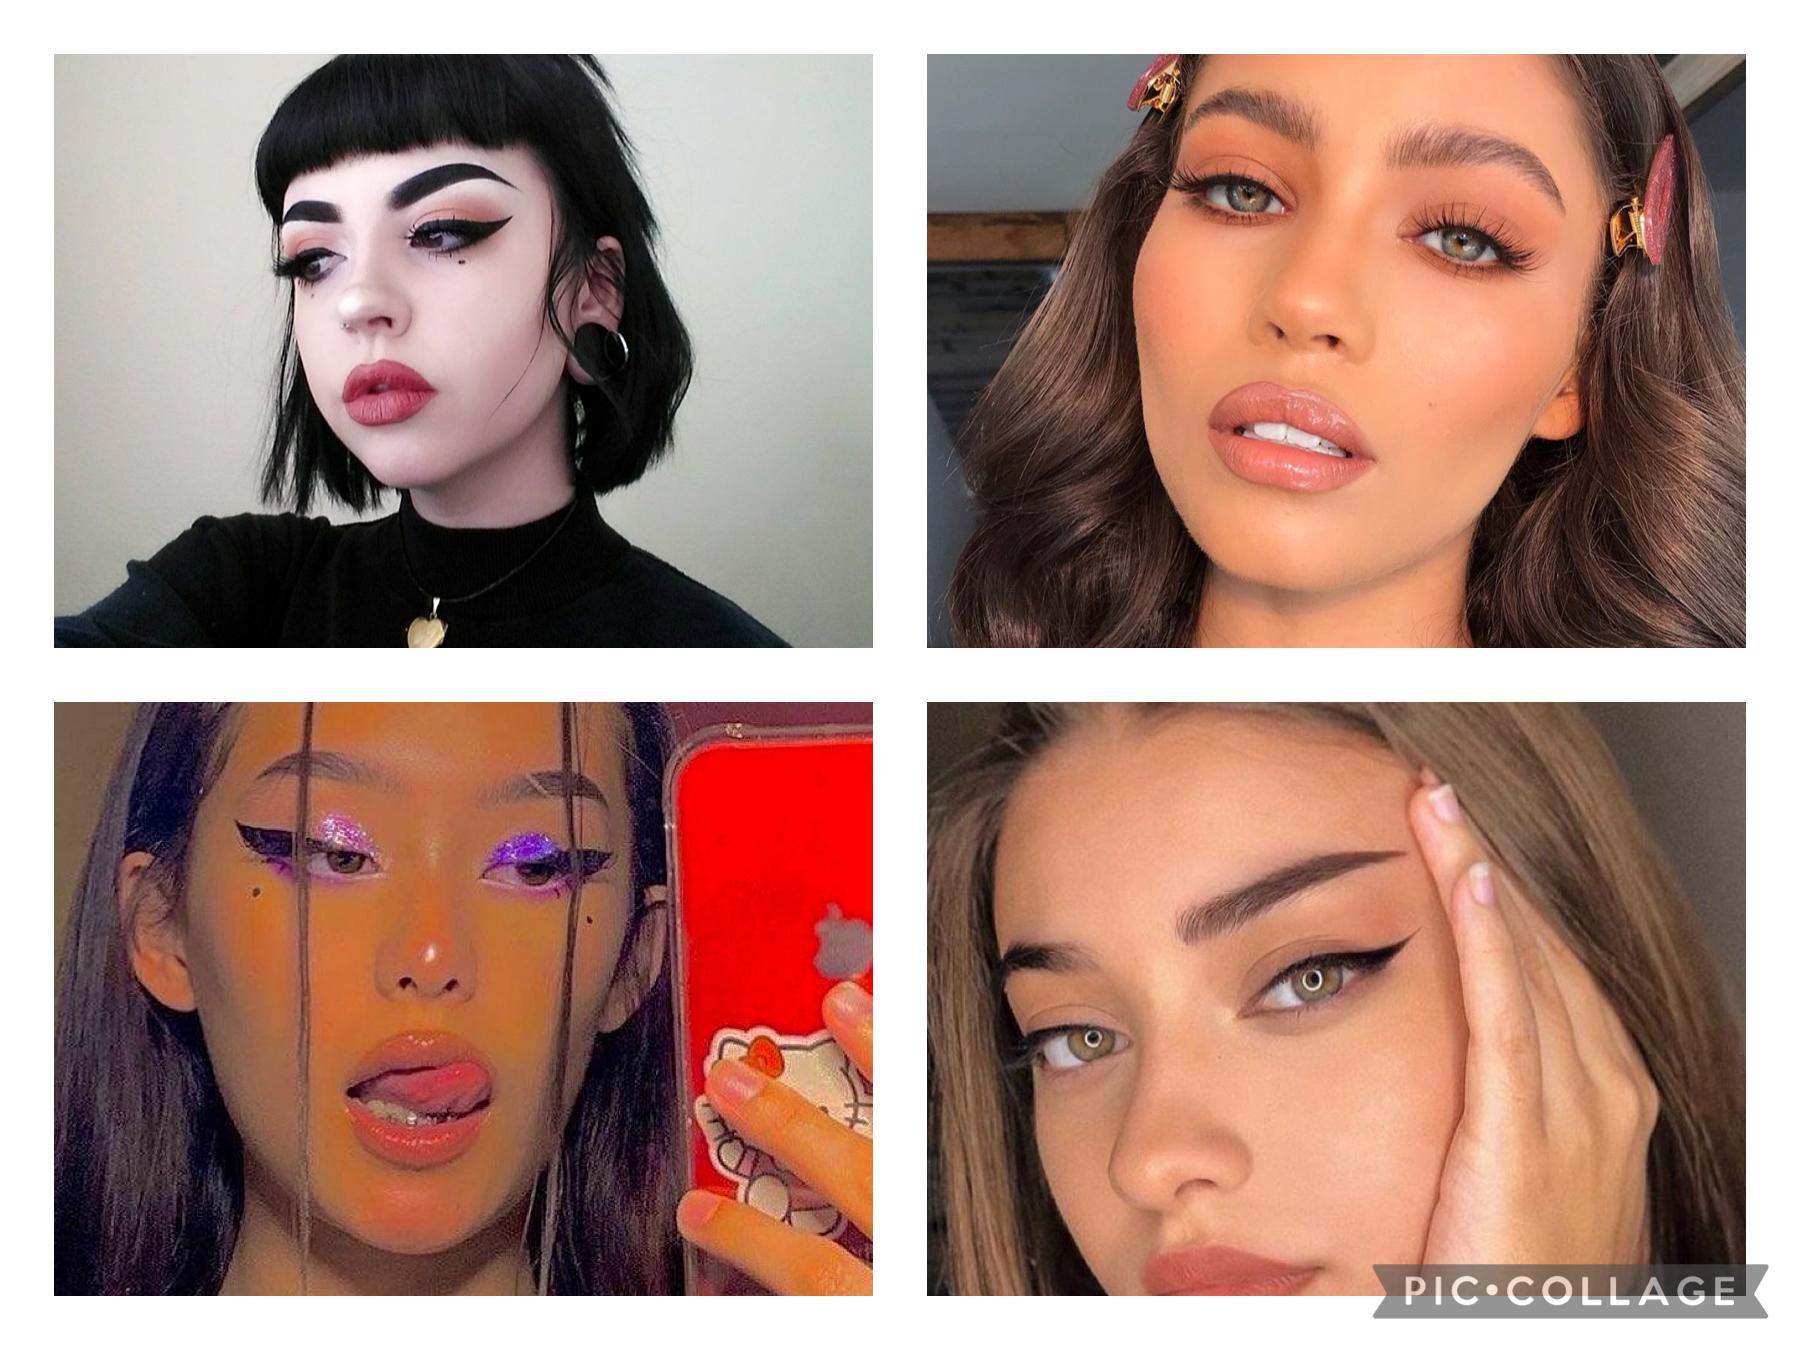 Vous préférez quel makeup ? Moi j'aime bien le 2 